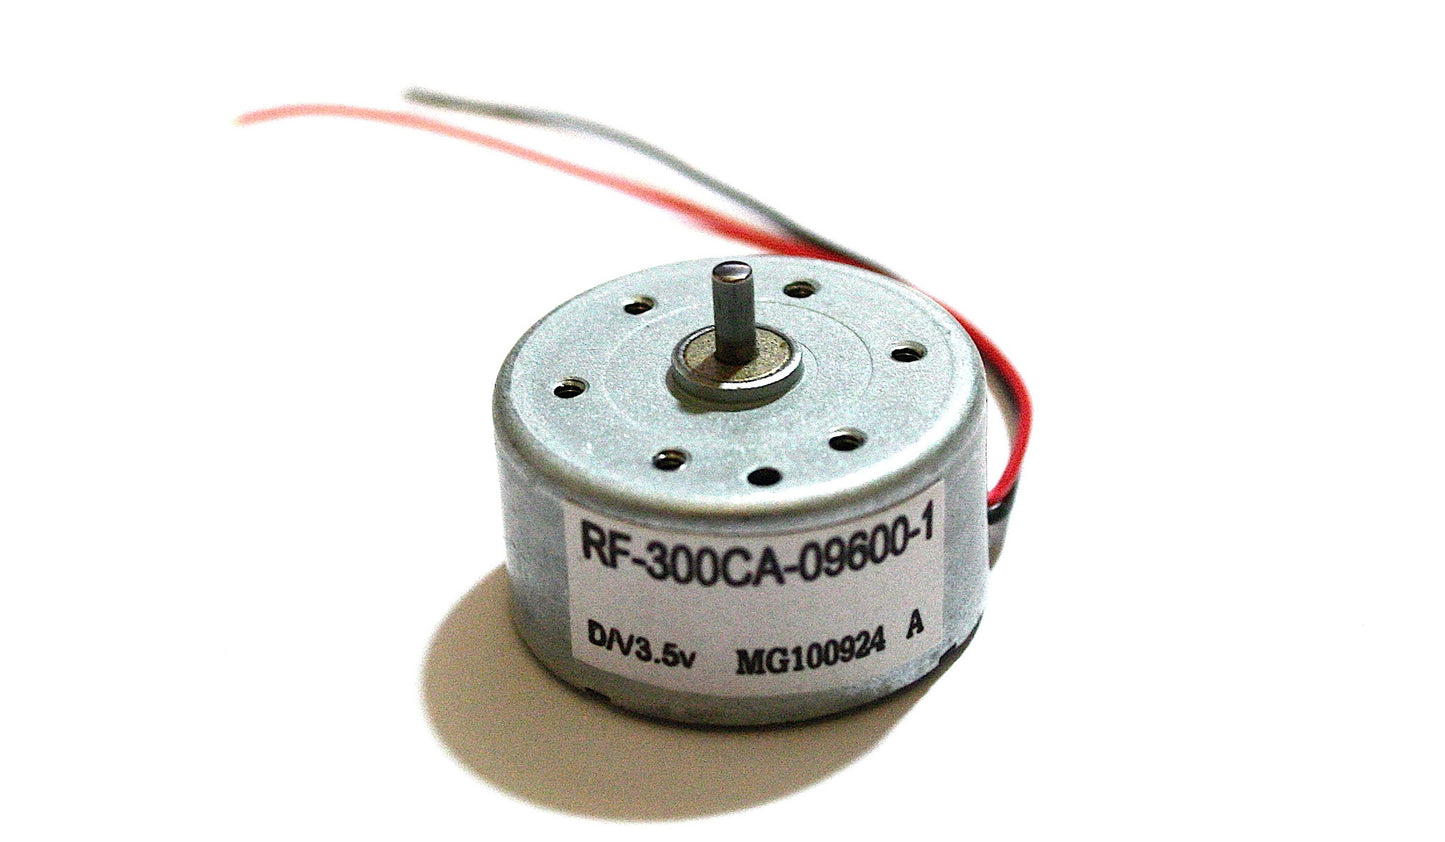 RF-300CA-09600-1 MOTOR 3.5V